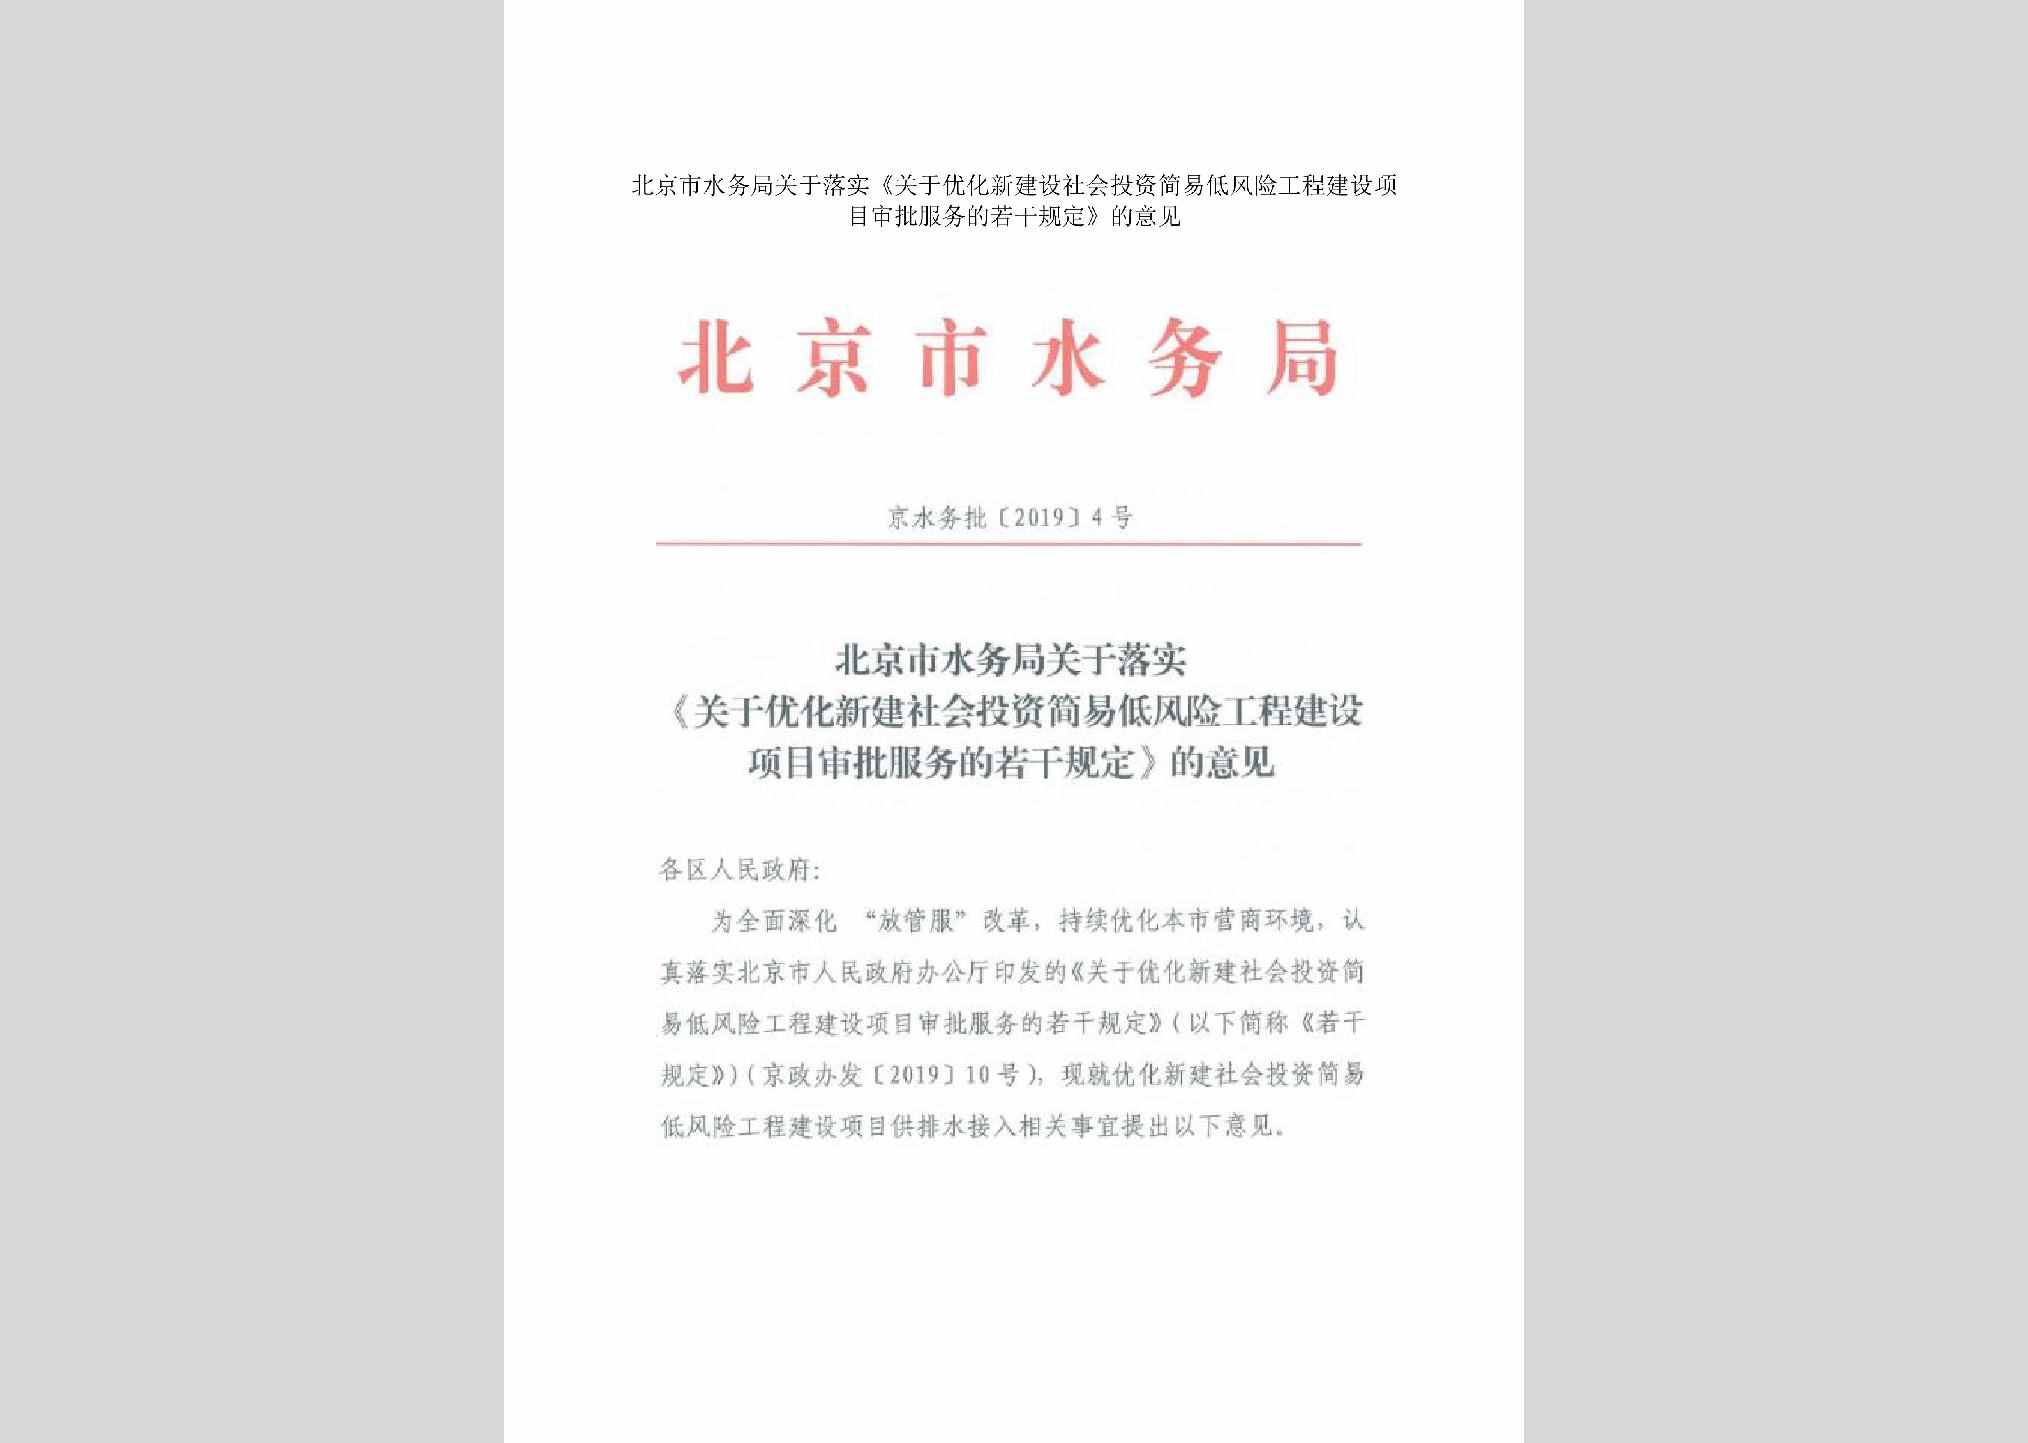 京水务批[2019]4号：北京市水务局关于落实《关于优化新建设社会投资简易低风险工程建设项目审批服务的若干规定》的意见